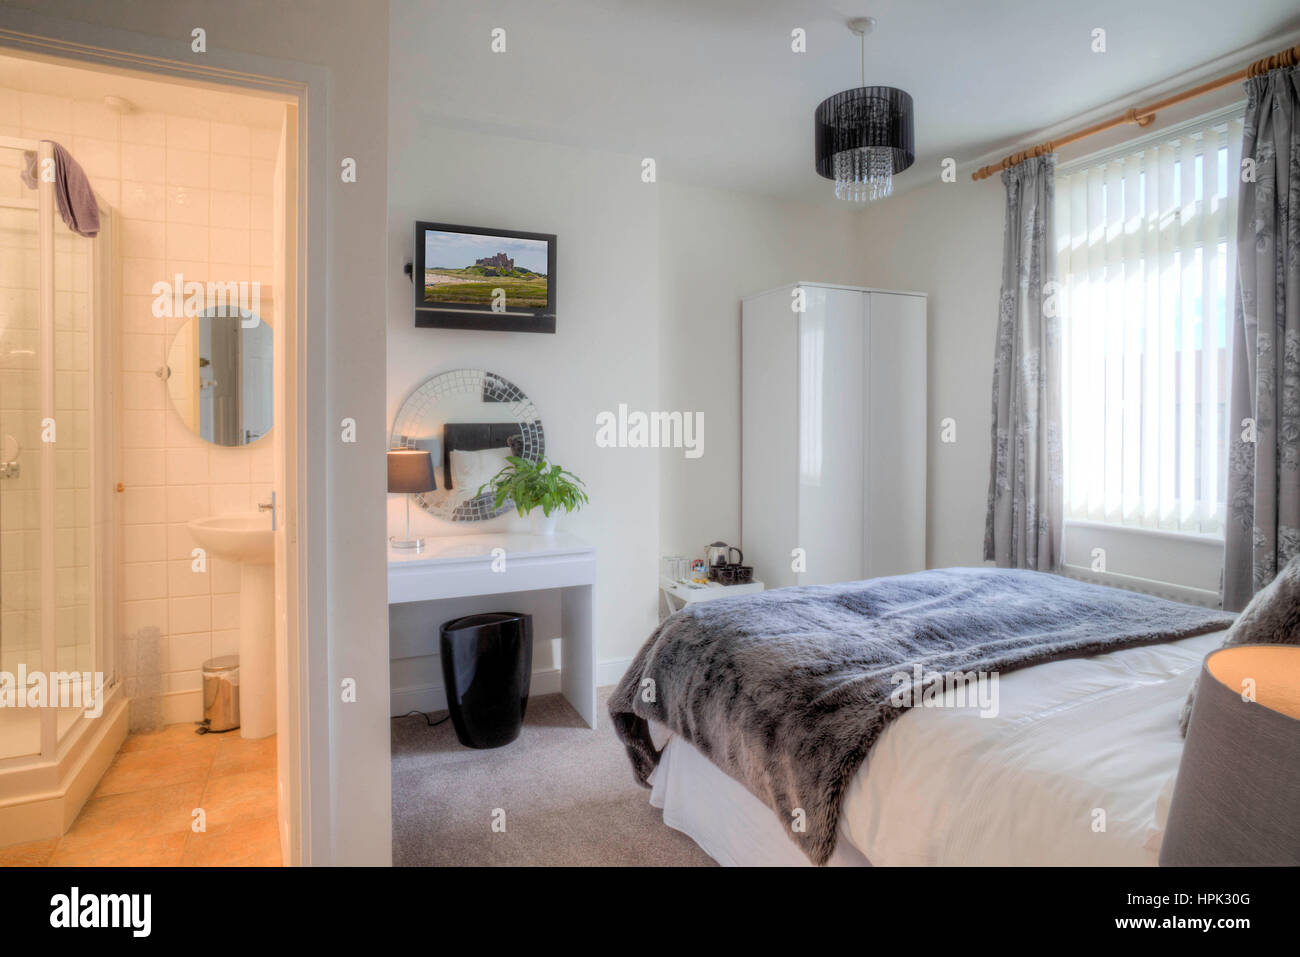 Leere Hotelzimmer mit einem Doppelbett ausgestattet. Ein Bad in den anderen Raum durch die Tür zu sehen. Stockfoto